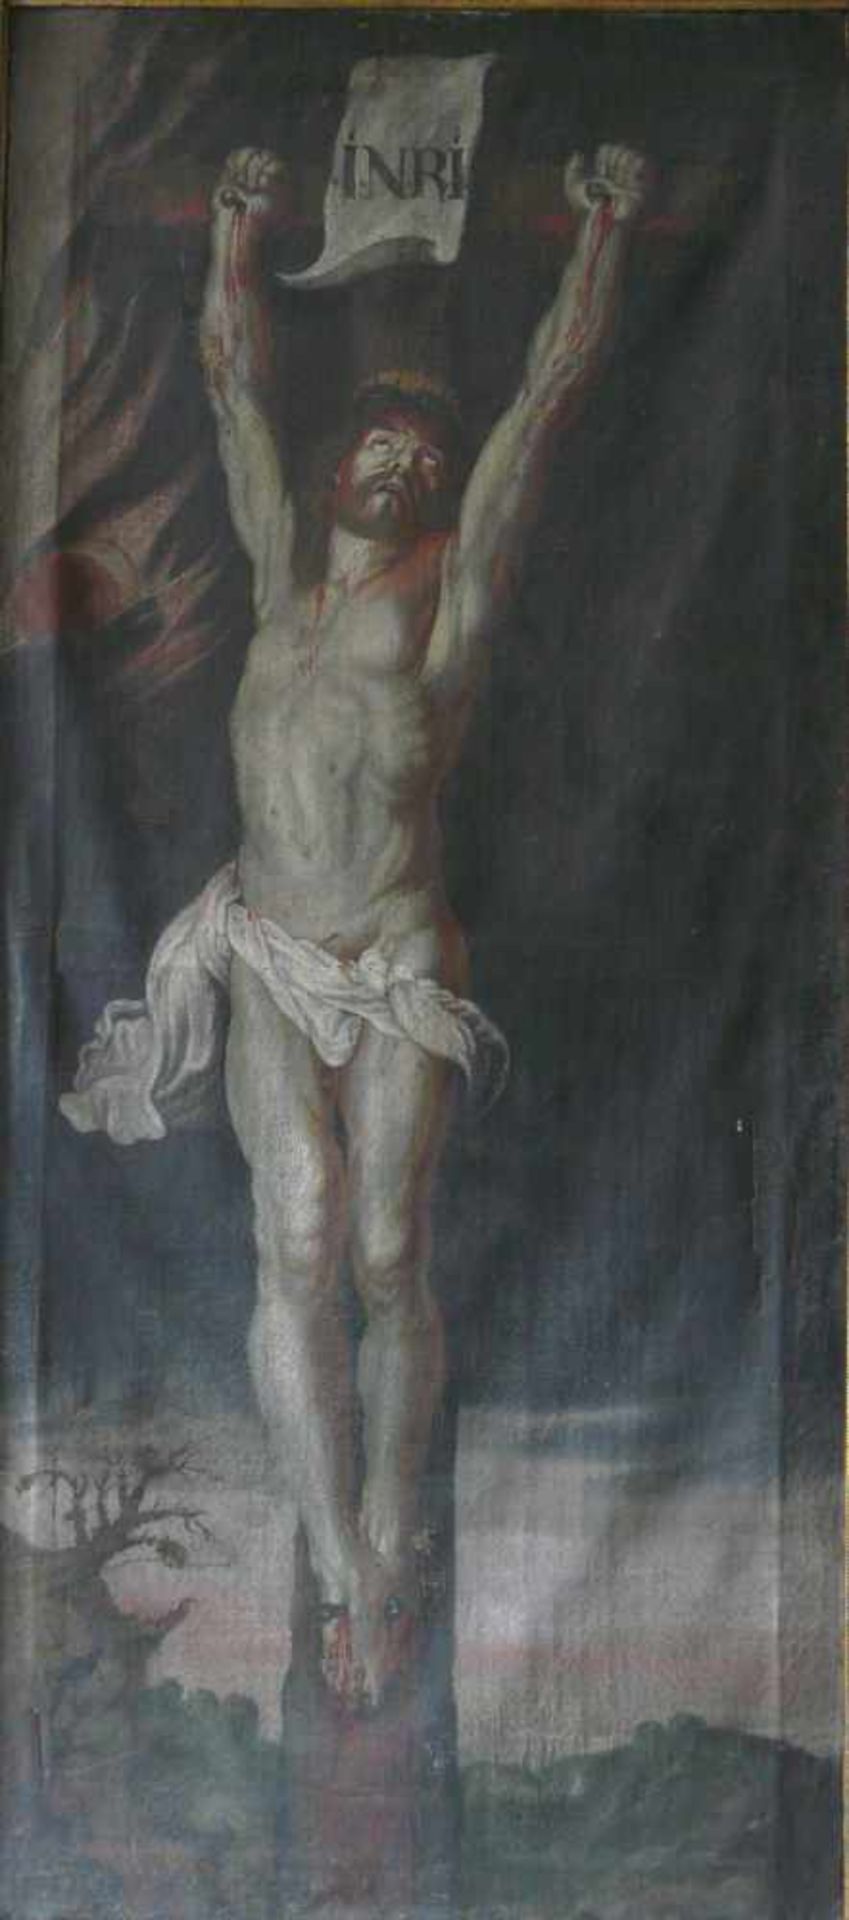 Gekreuzigter Christus (Kopie nach Peter Paul Rubens von 1618/20)Kopie der Kreuzigungsszene von Peter